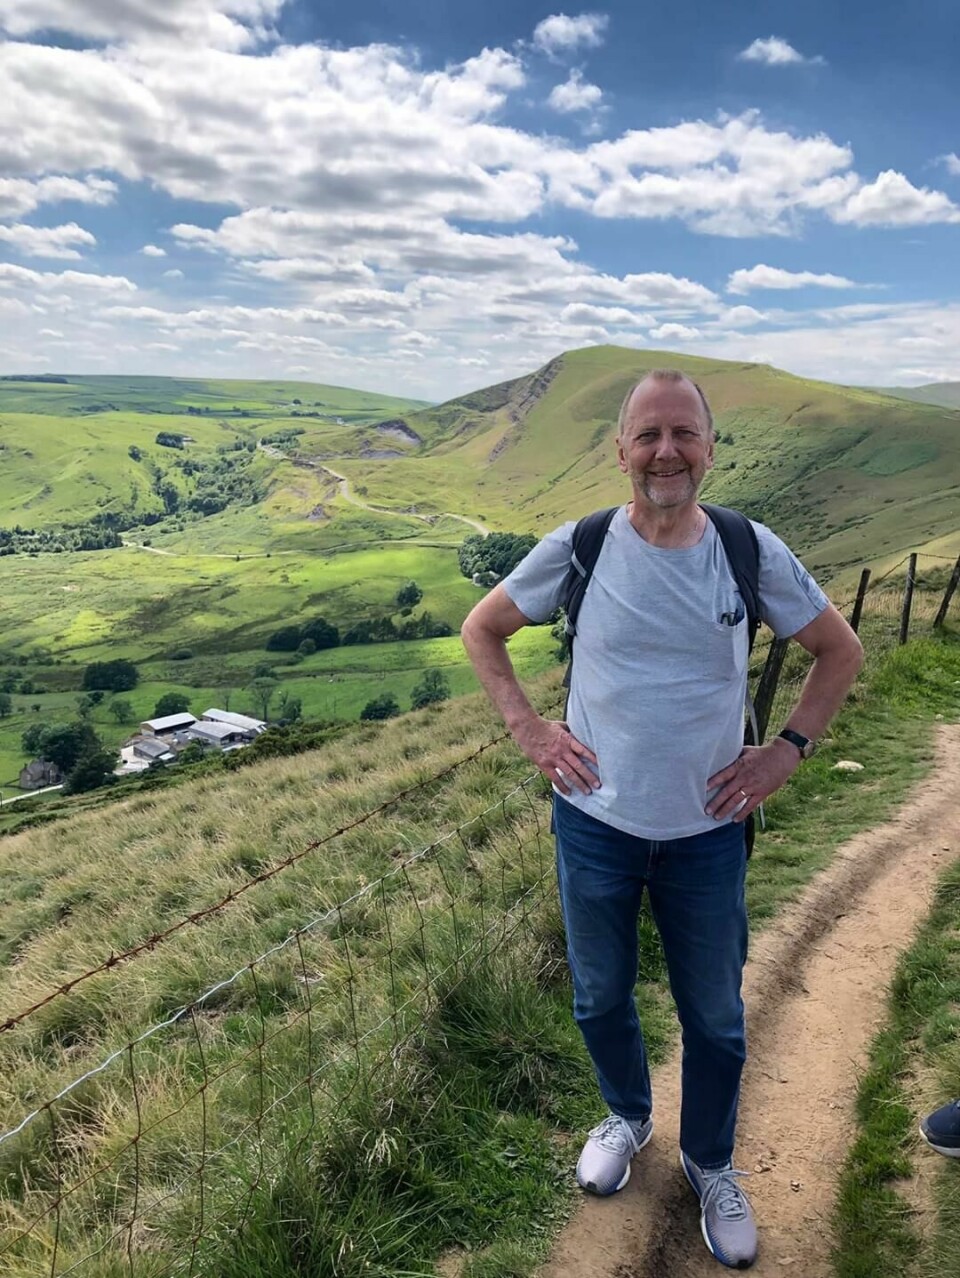 På fritiden elsker Tommy å gå i fjellet. Her er han på en av sine turer i Peak District, med Lose Hill og Greater Ridge i bakgrunnen.